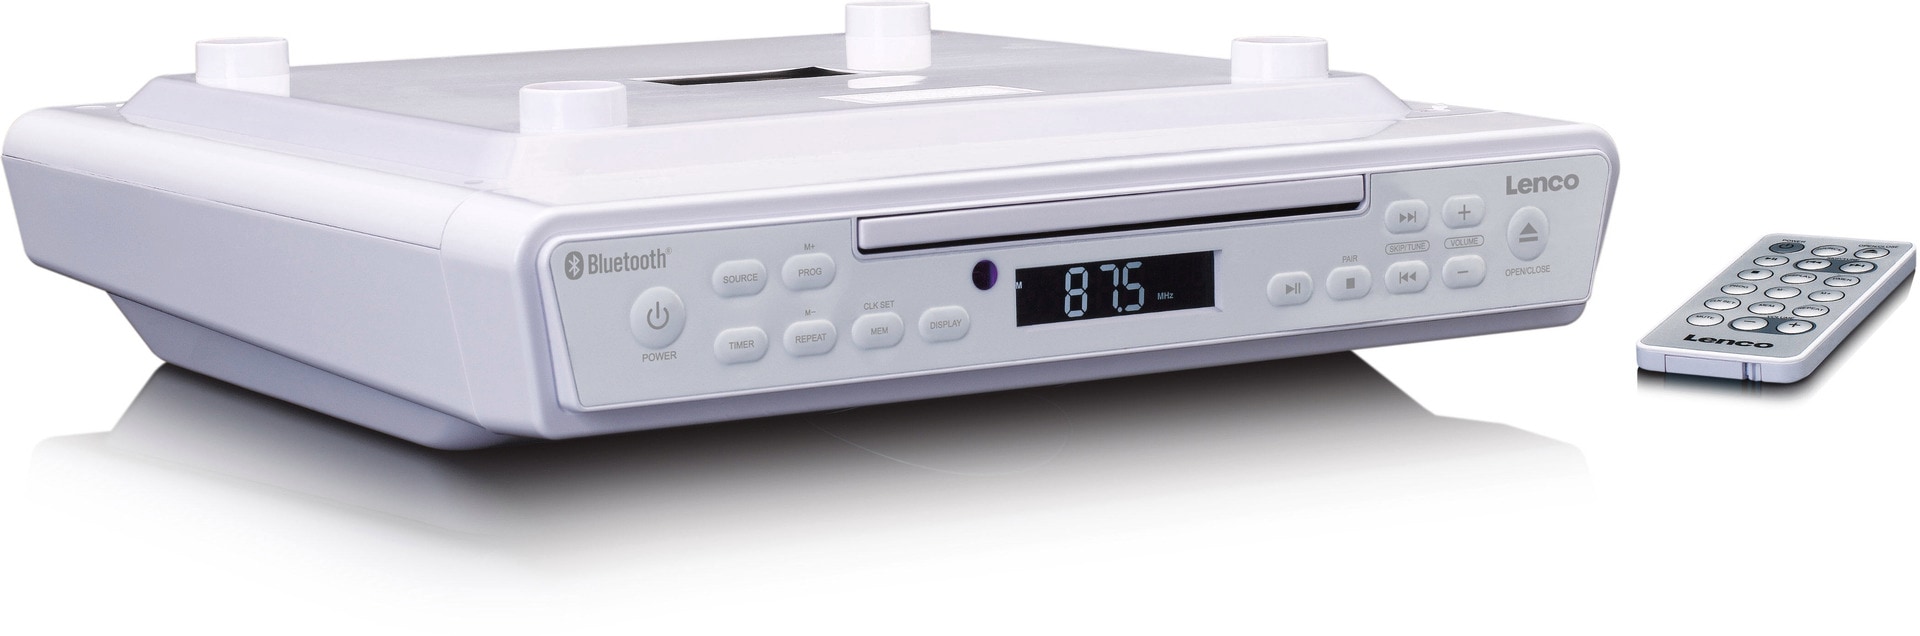 Lenco KCR-150WH Küchenradio mit CD-Player, Weiß ++ Cyberport